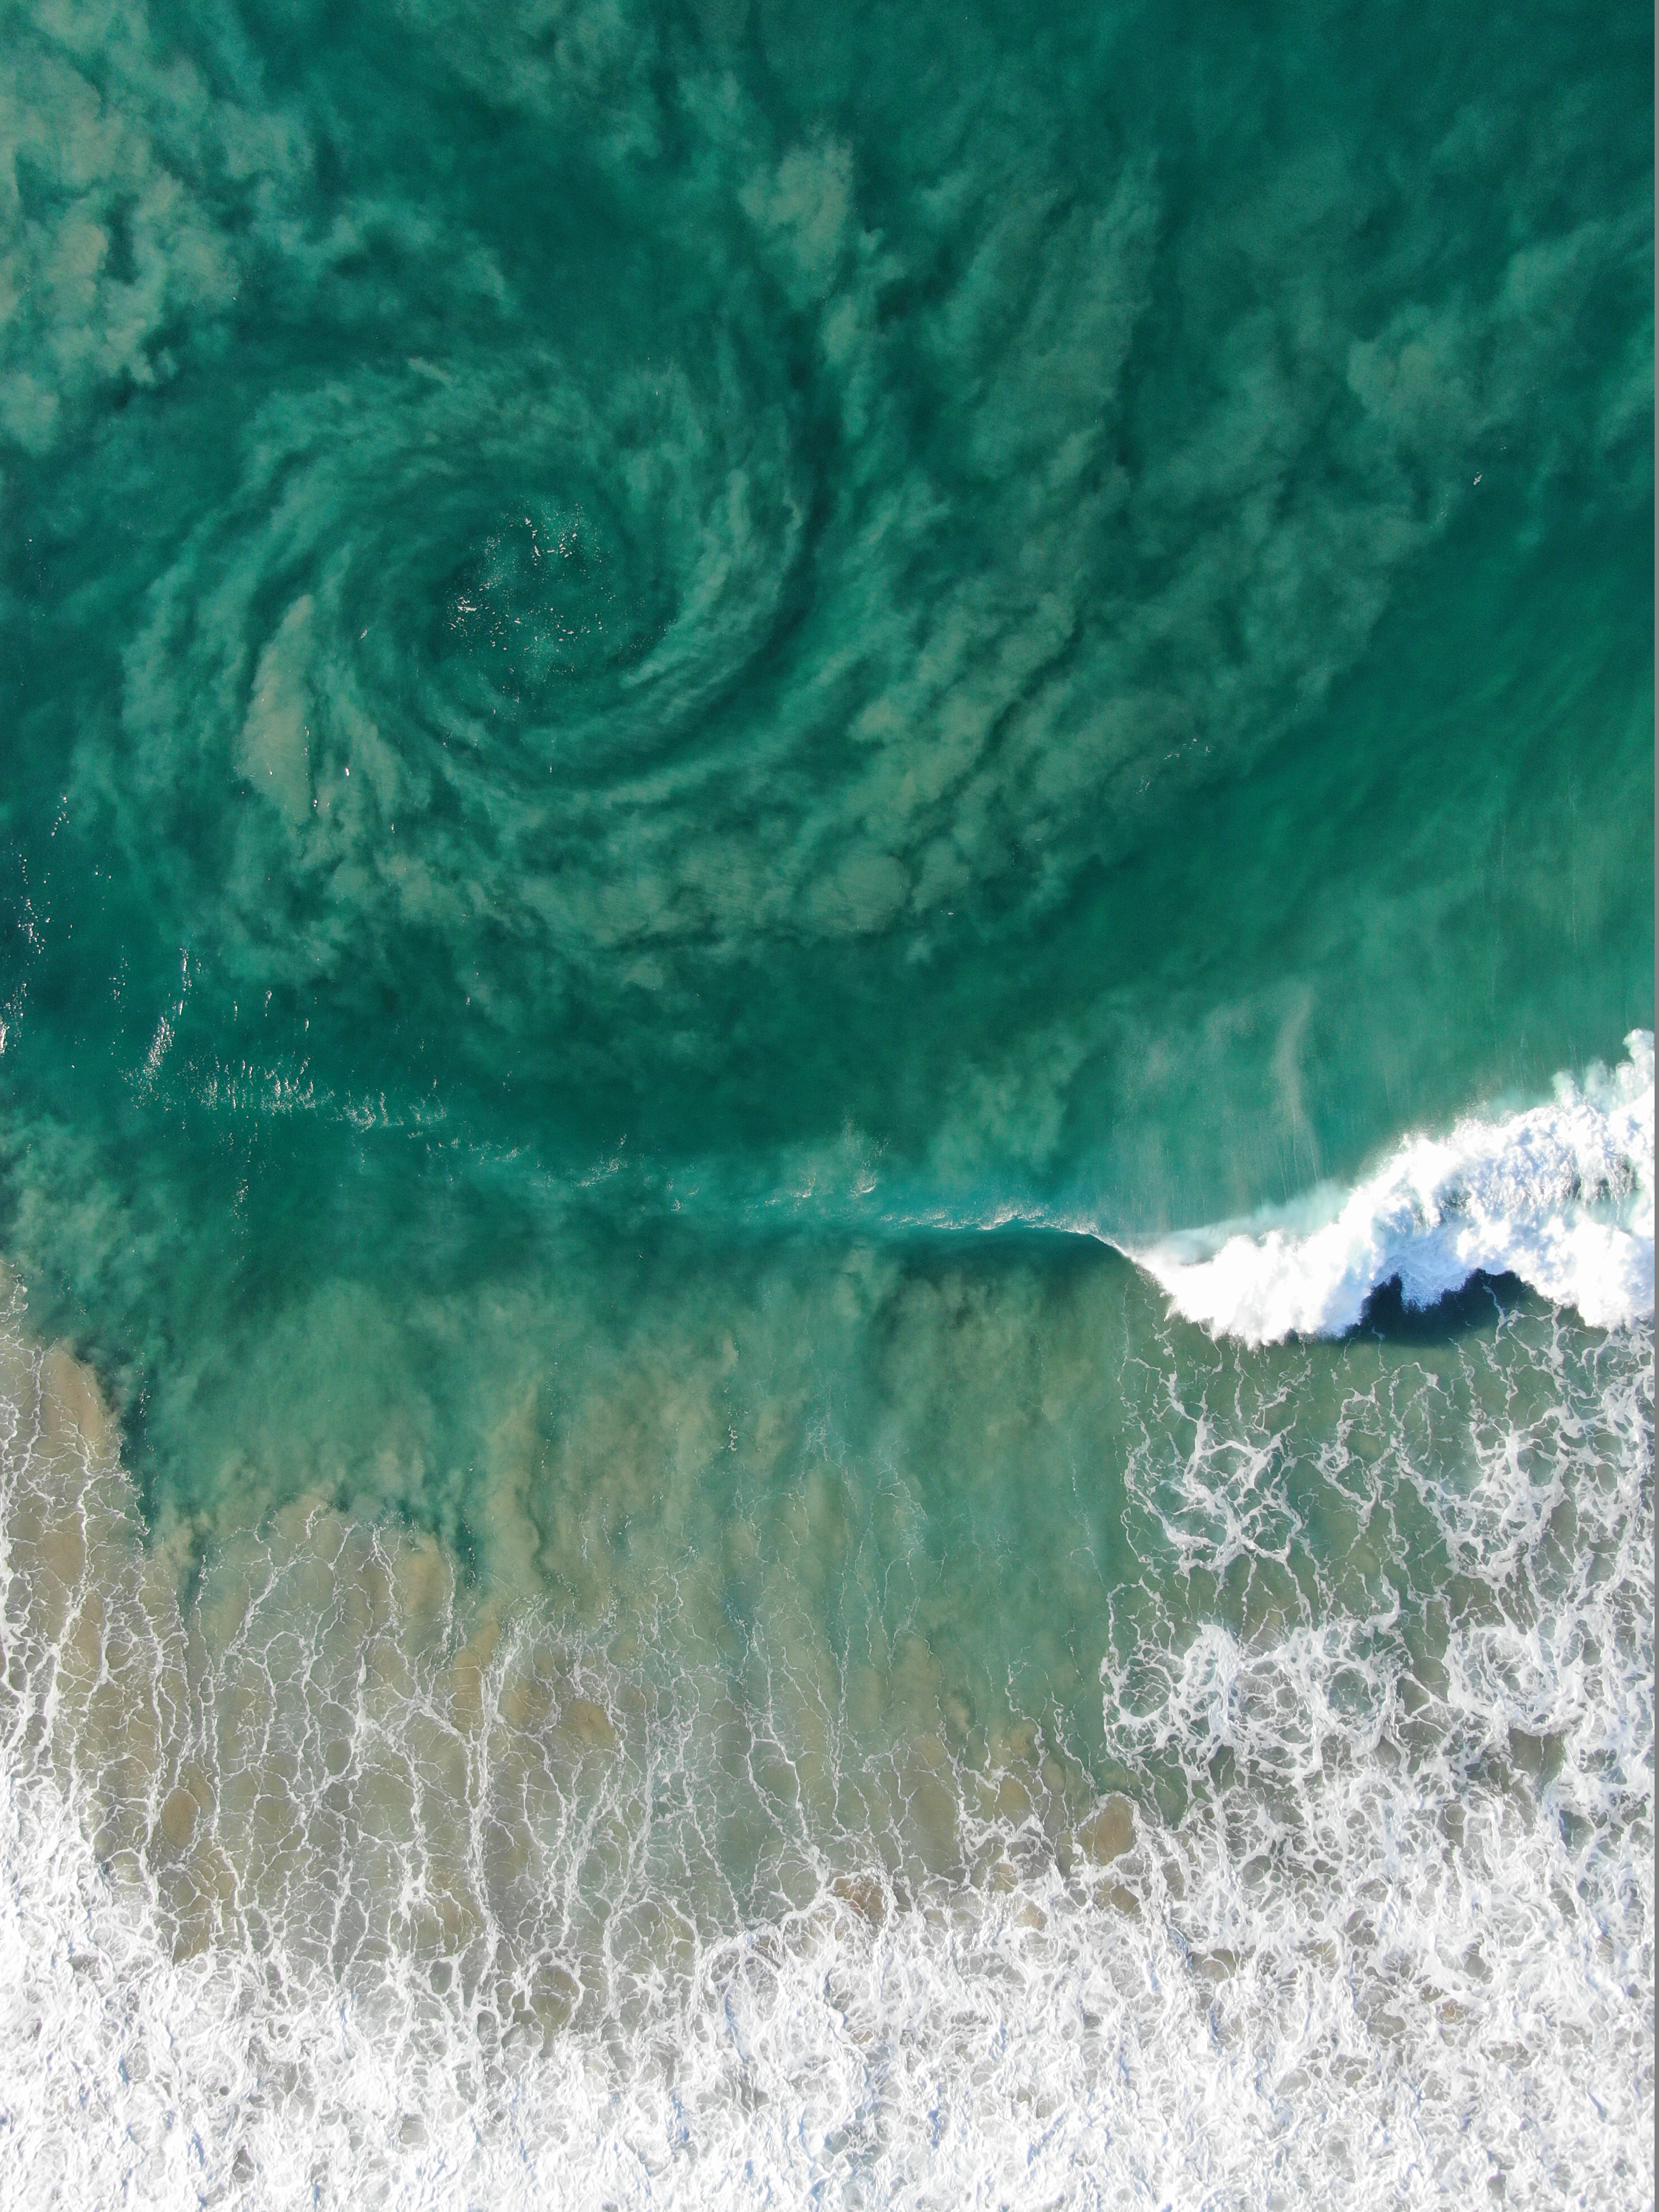 Ocean swirl